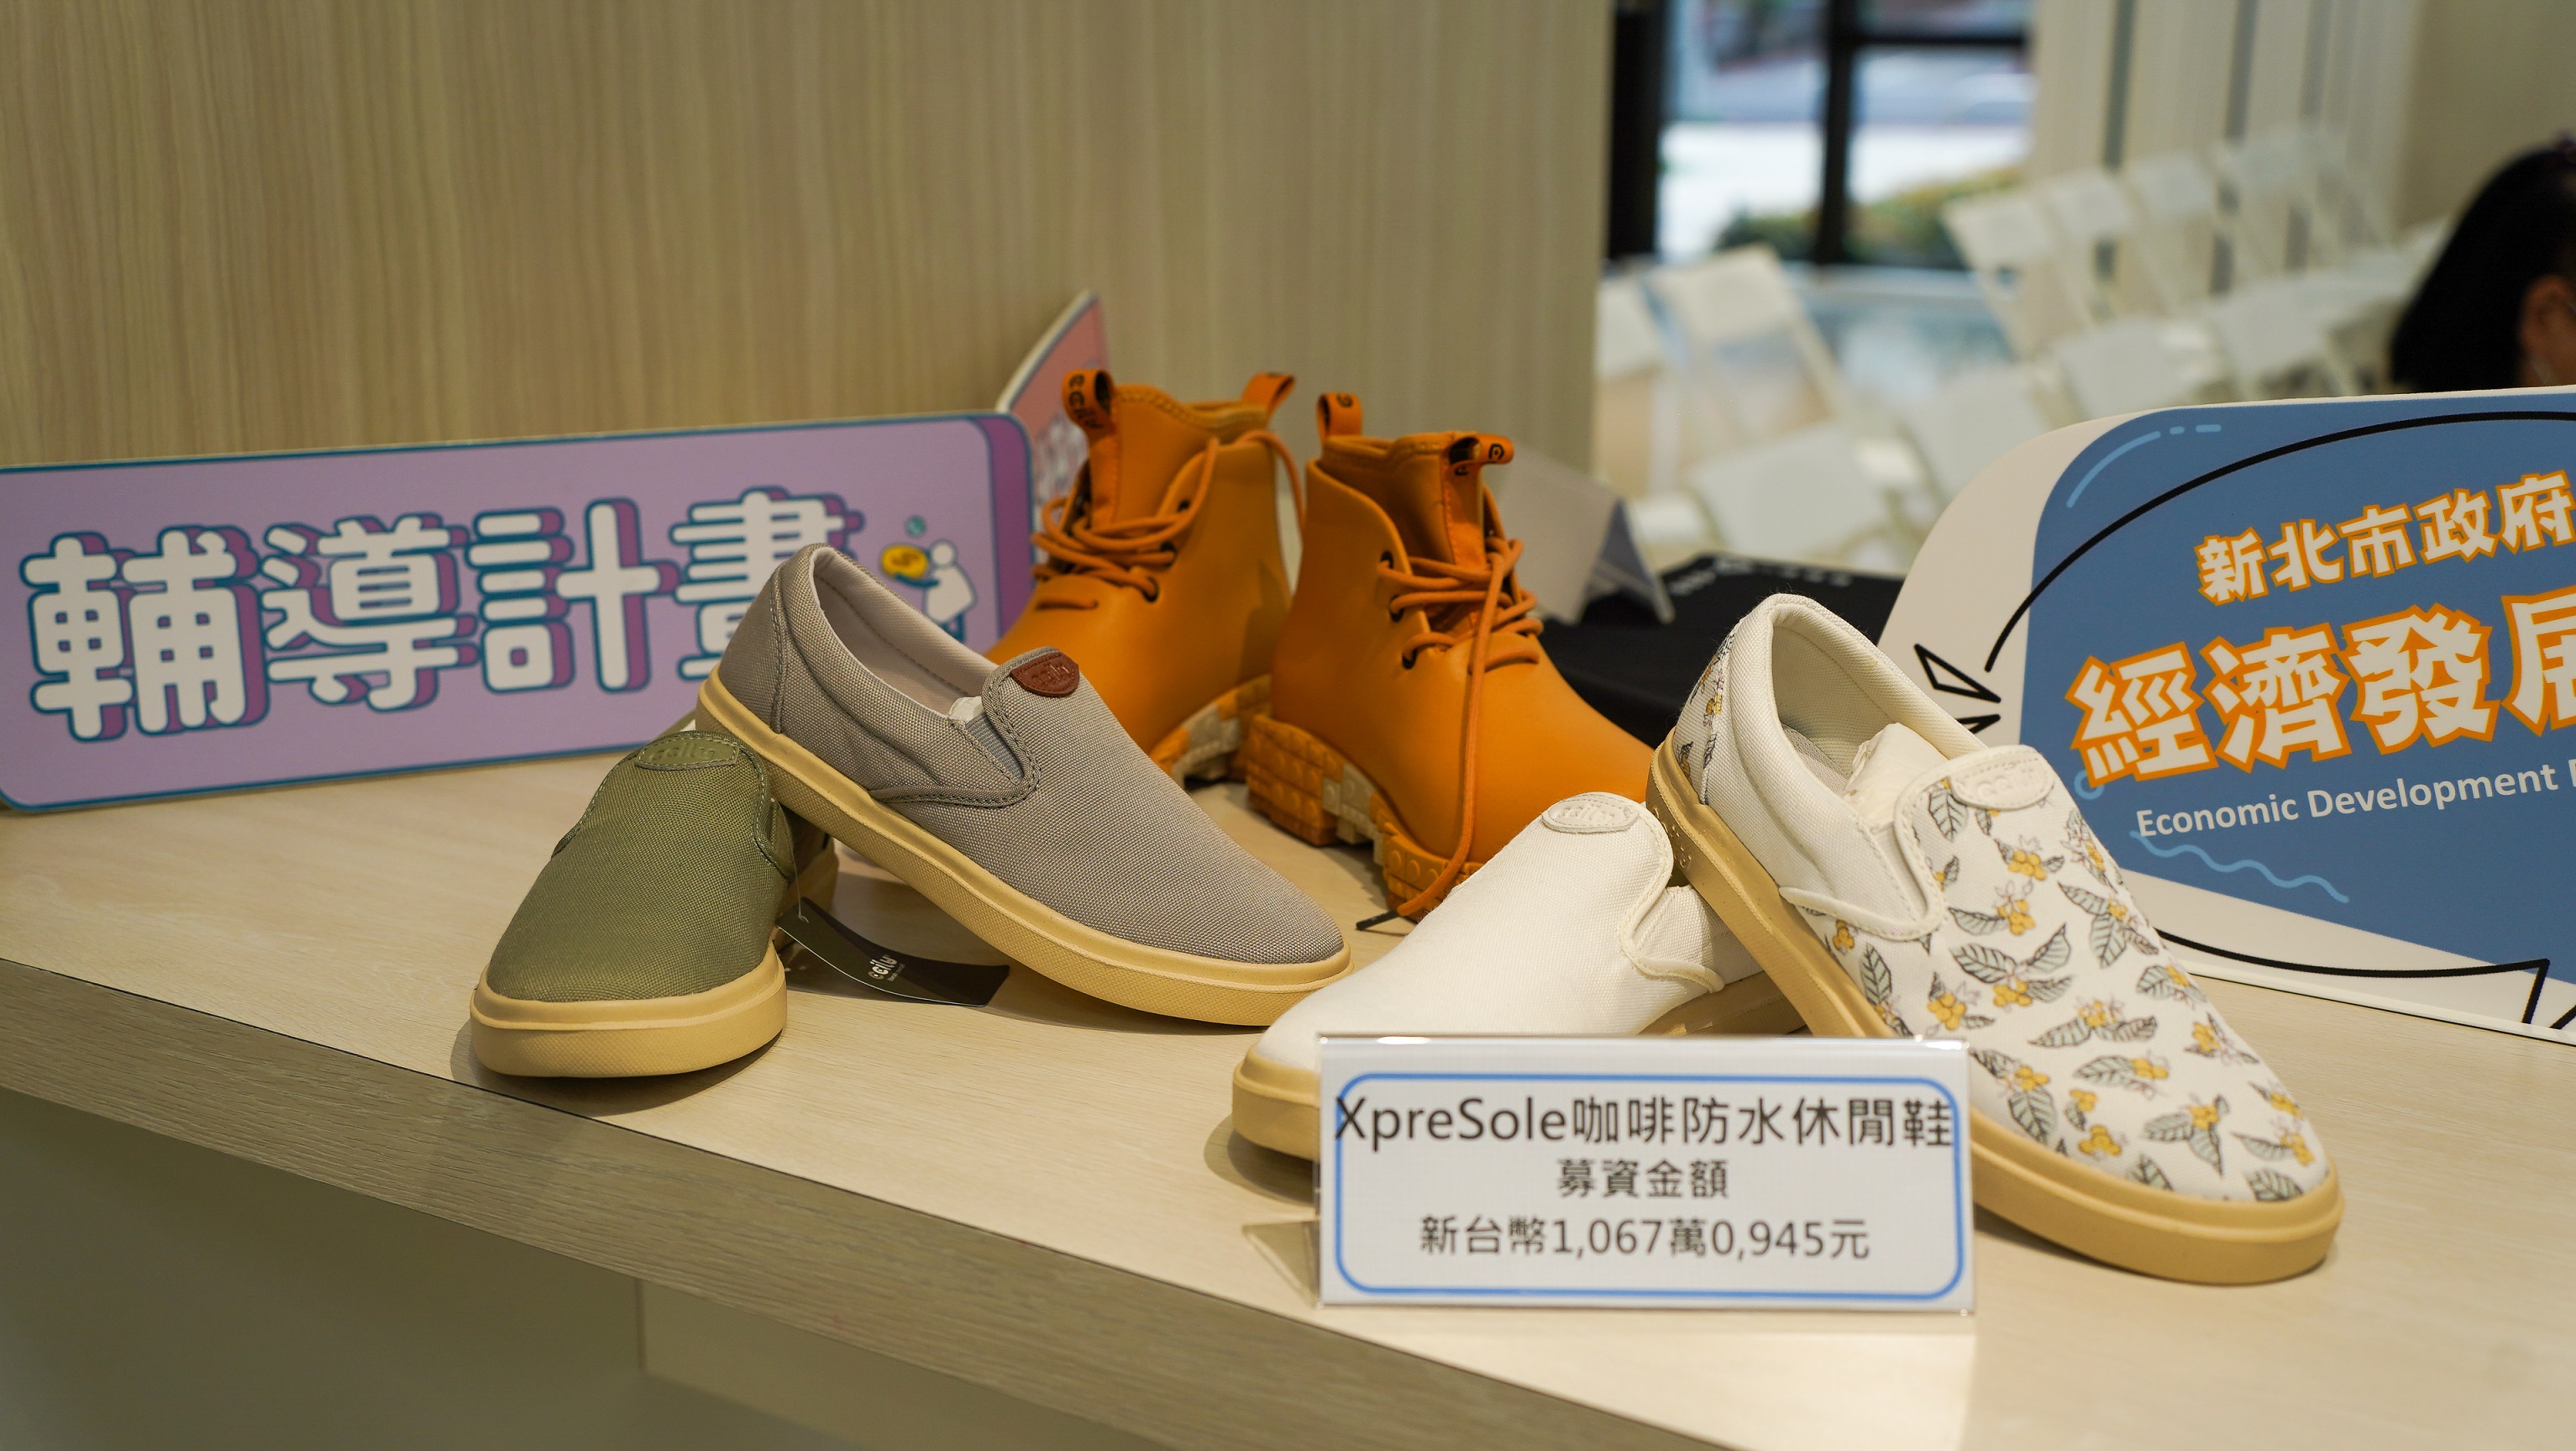 「馳綠國際」以使用回收物取代石化材料製作「全回收鞋」的獨家專利出發，並藉由群眾募資拓展品牌新道路。